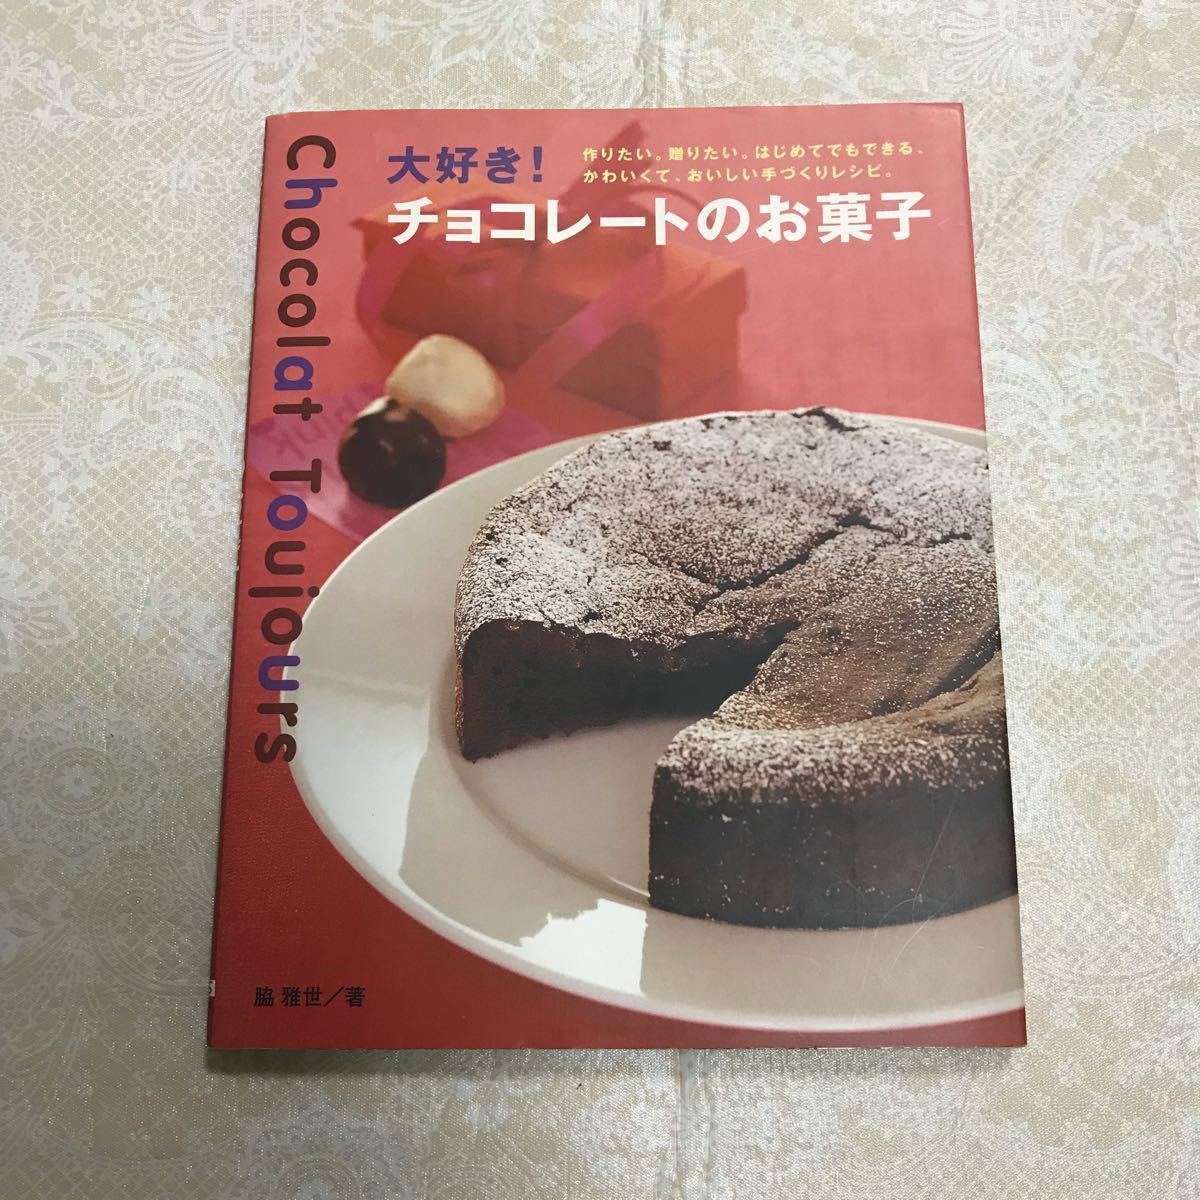 大好き!チョコレートのお菓子/ 脇 雅世